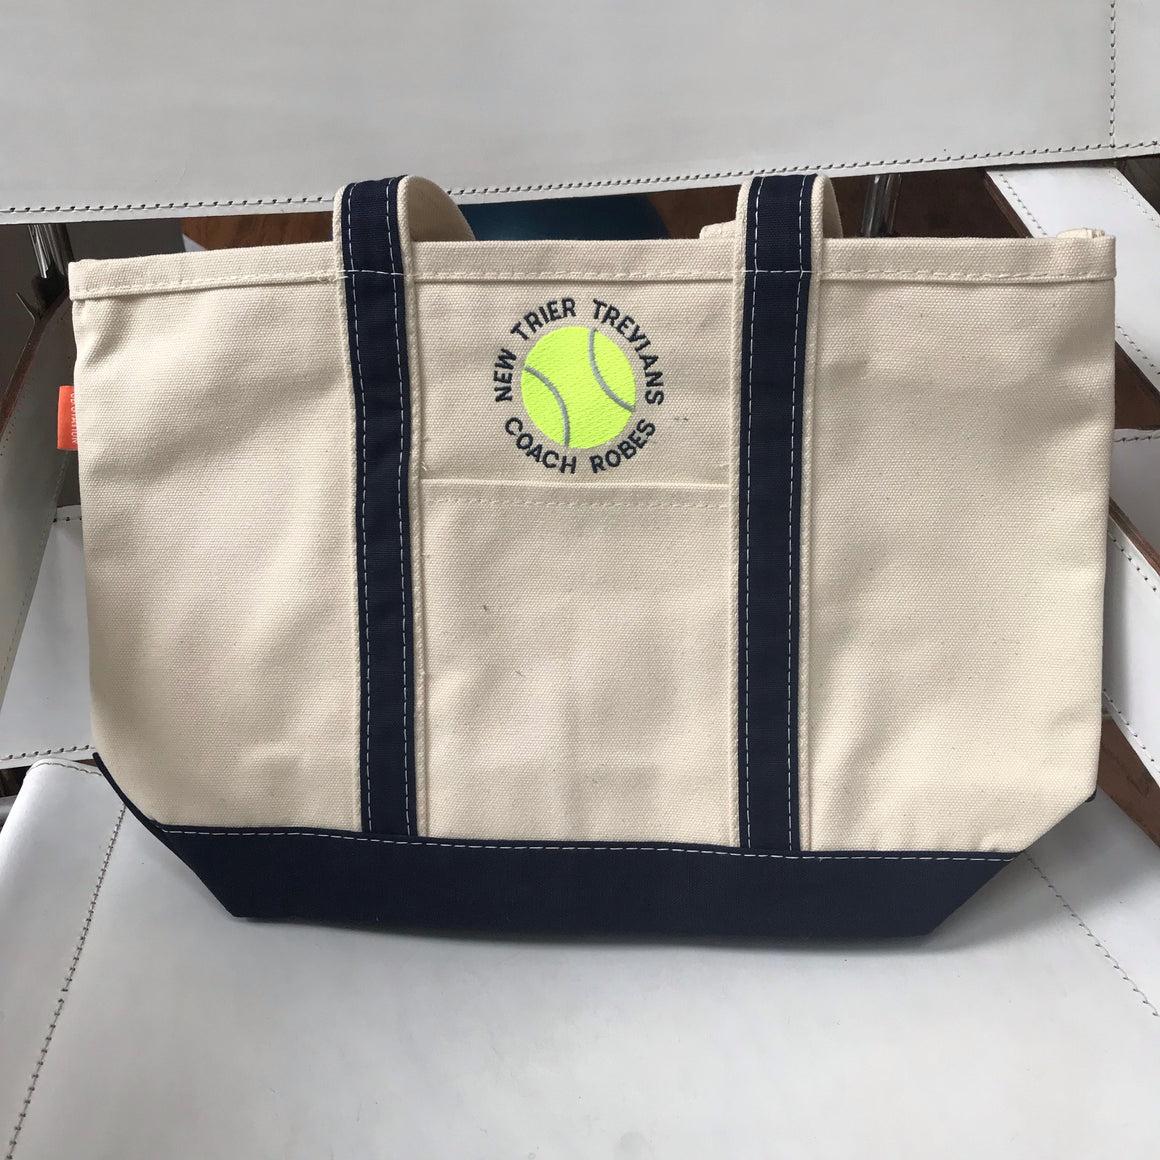 Tennis Tote Bag